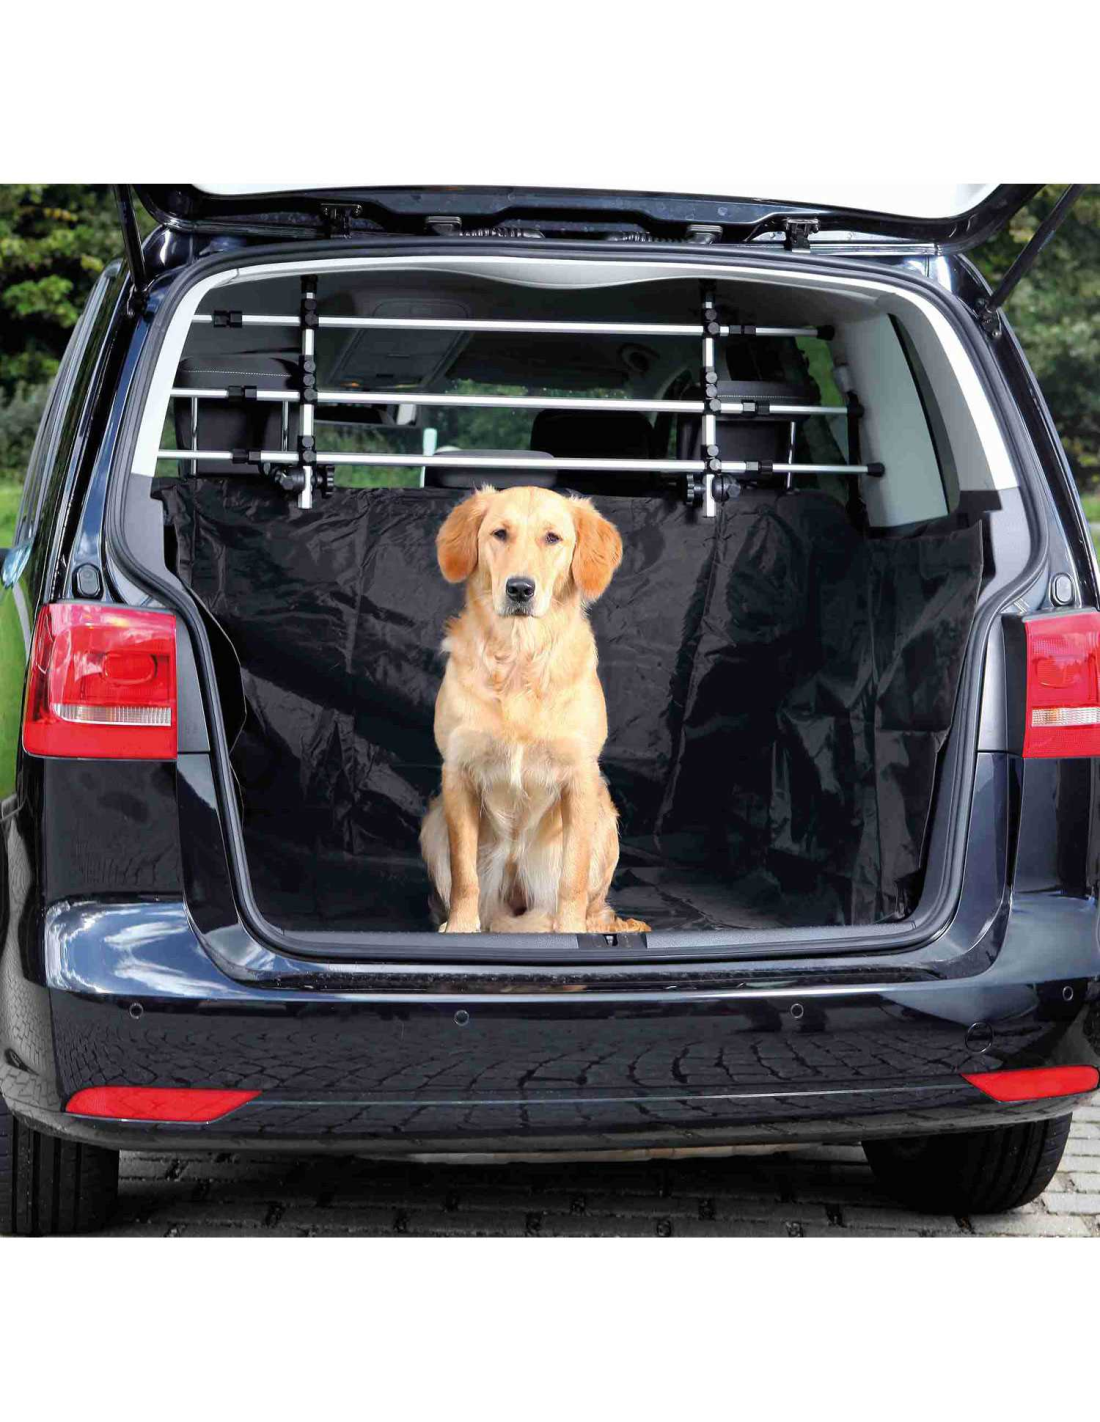 Protector universal del maletero del coche para perros, 2 bolsillos  grandes, antideslizante impermeable, cubierta del maletero de 185 x 103 cm  para la mayoría de los coches, negro